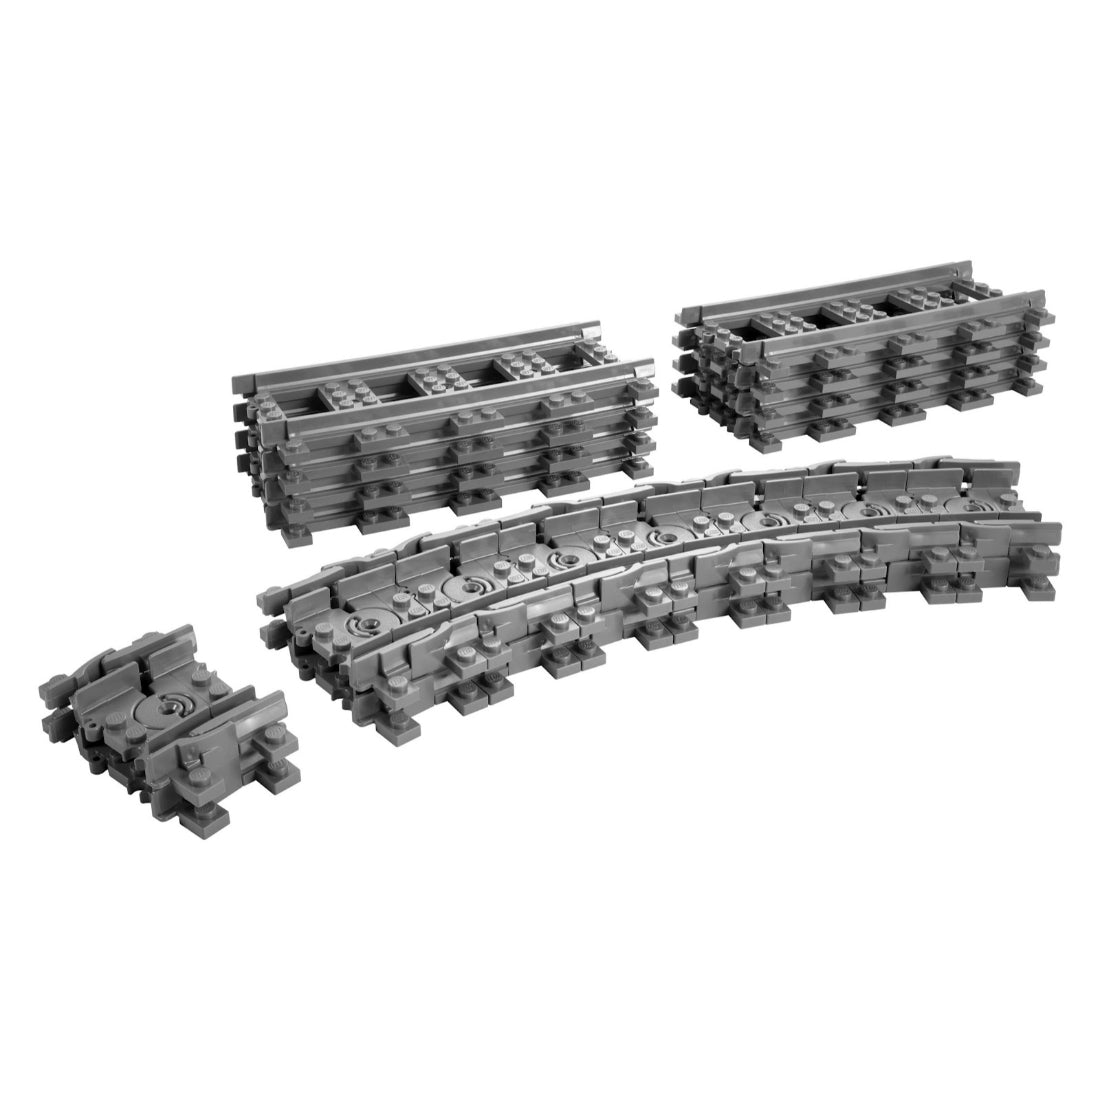 LEGO Vías flexibles y rectas (7499)